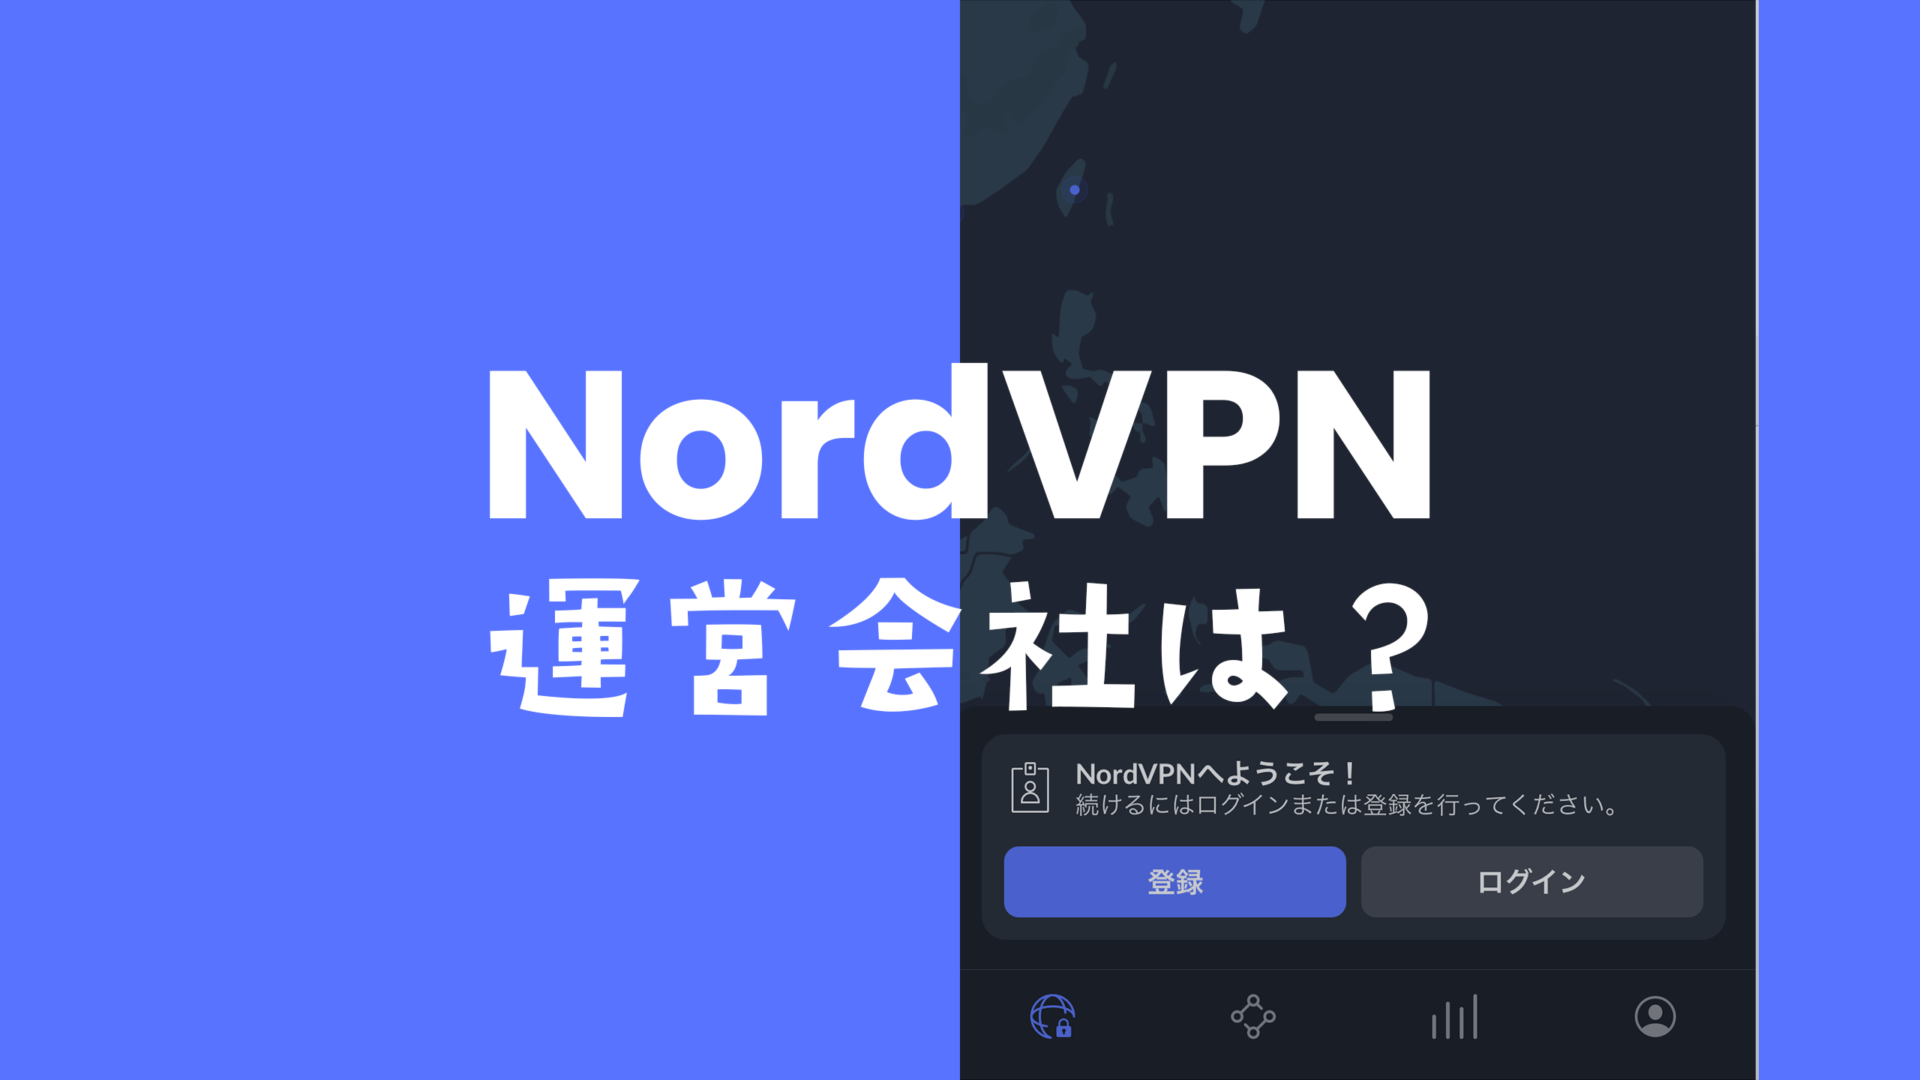 NordVPN(ノードVPN)の運営会社nordvpn s.a.はどこの企業？のサムネイル画像